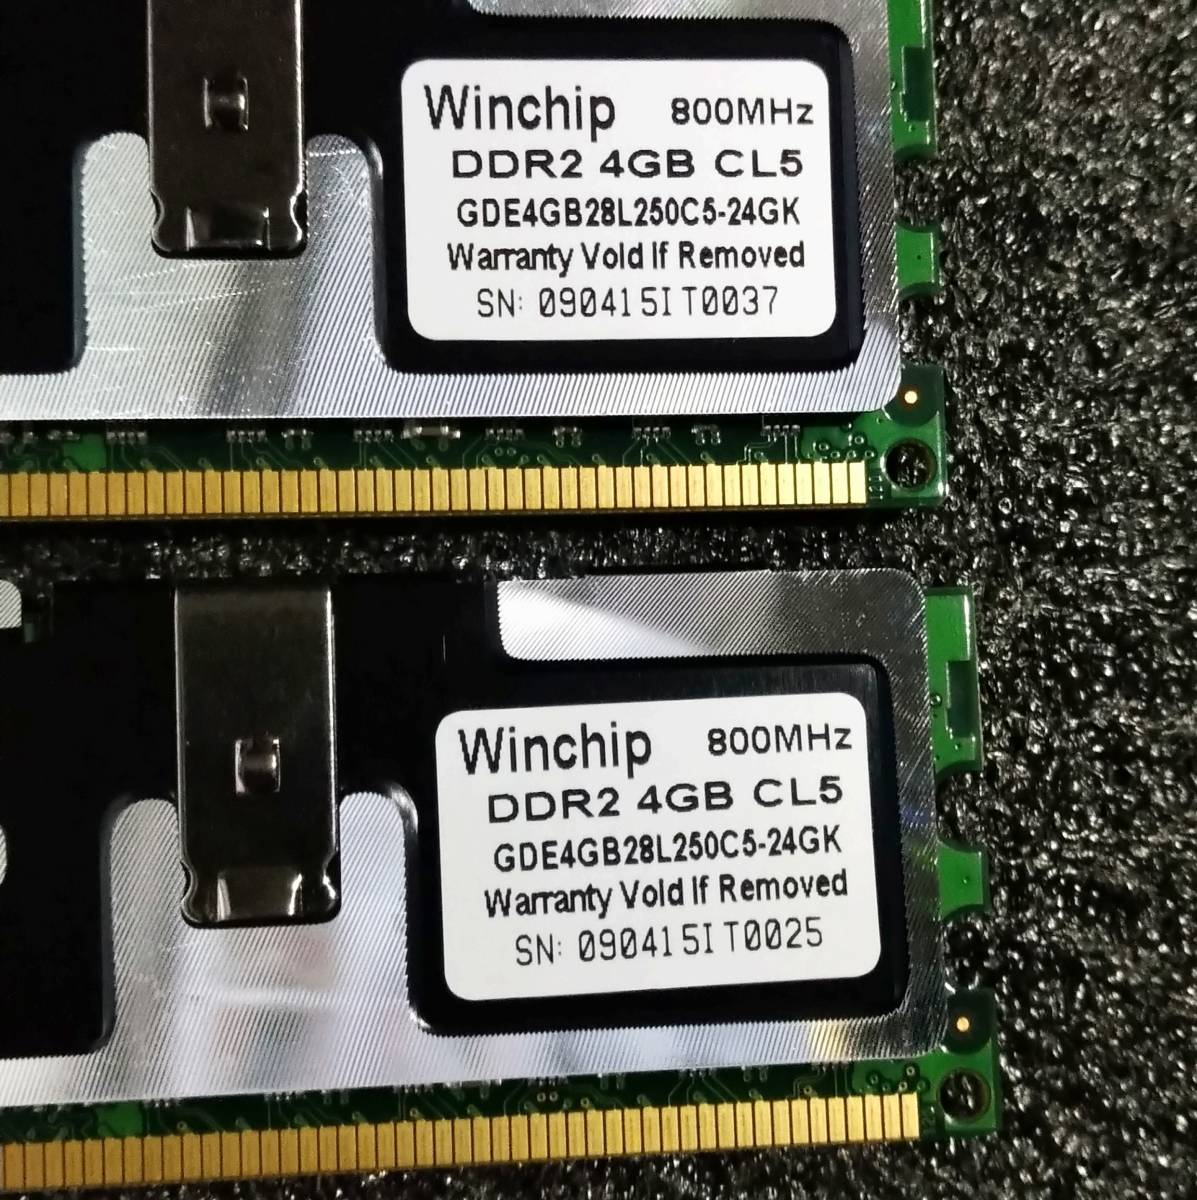 【中古】DDR2メモリ 16GB(4GB4枚組) Whinchip GDE4GB28L250C5-24GK [DDR2-800 PC2-6400]